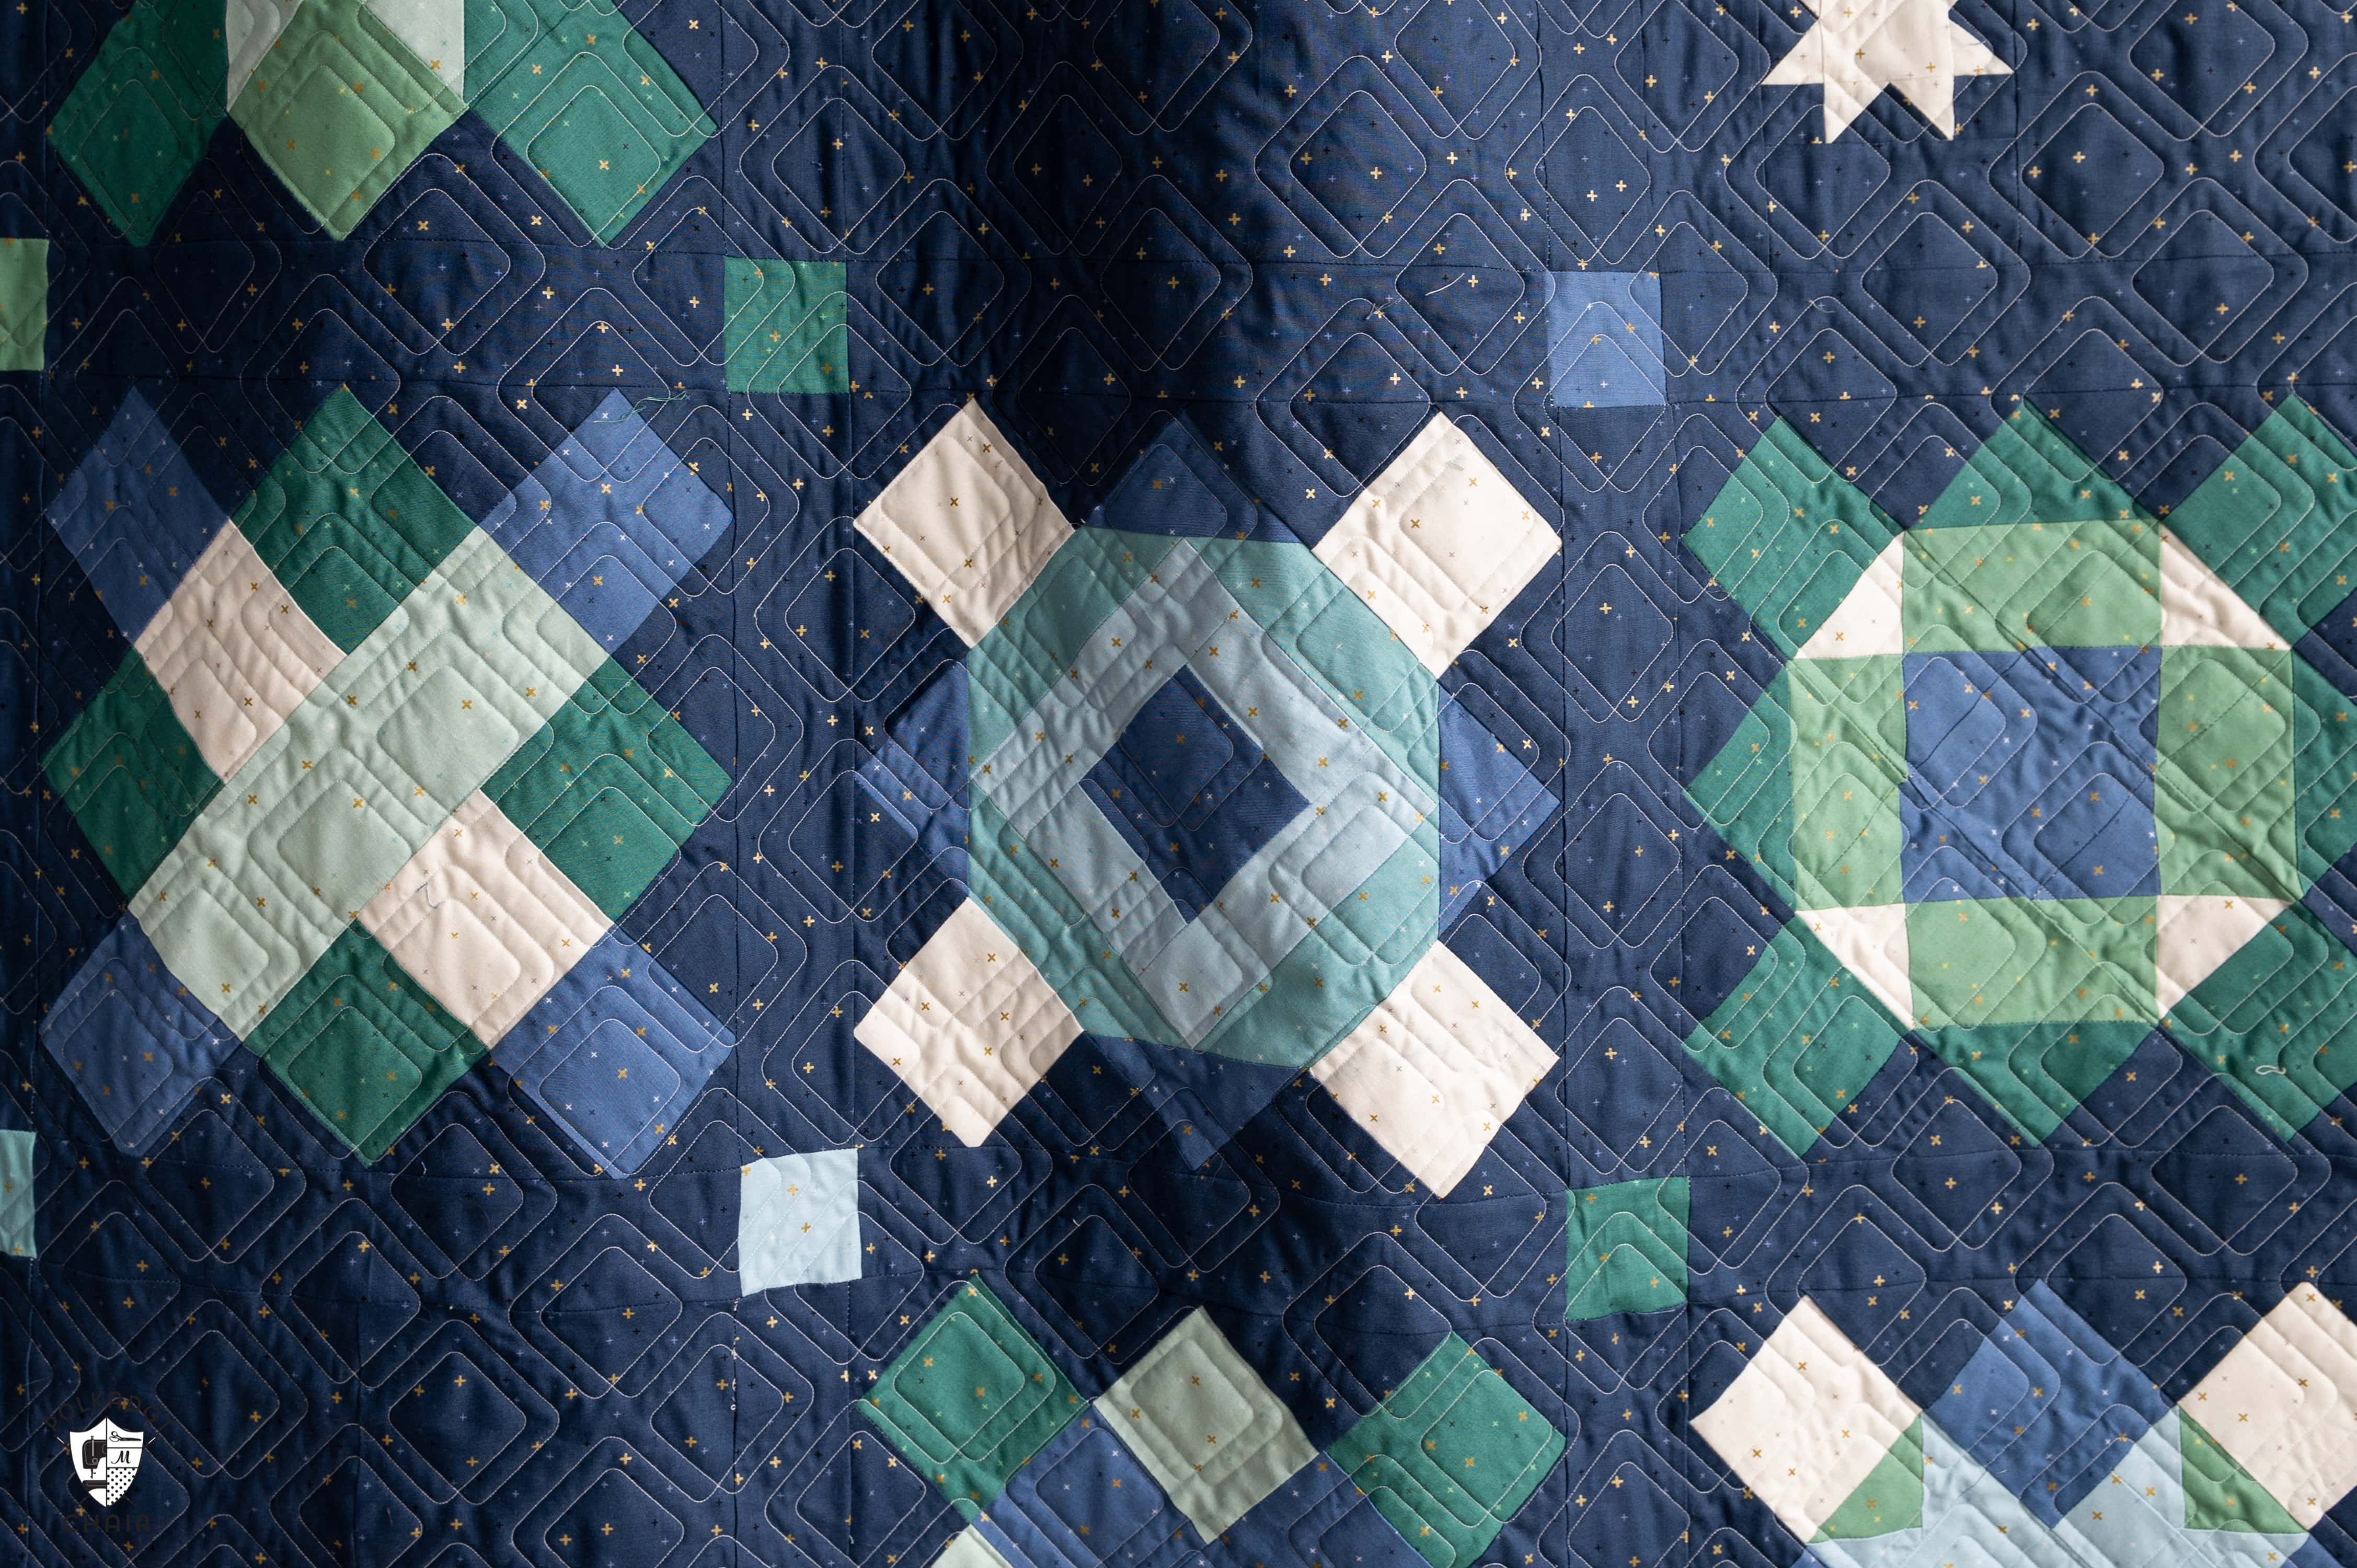 courtepointe bleu marine, bleue et verte composée de carrés et de rectangles - un motif de courtepointe carré de grand-mère moderne